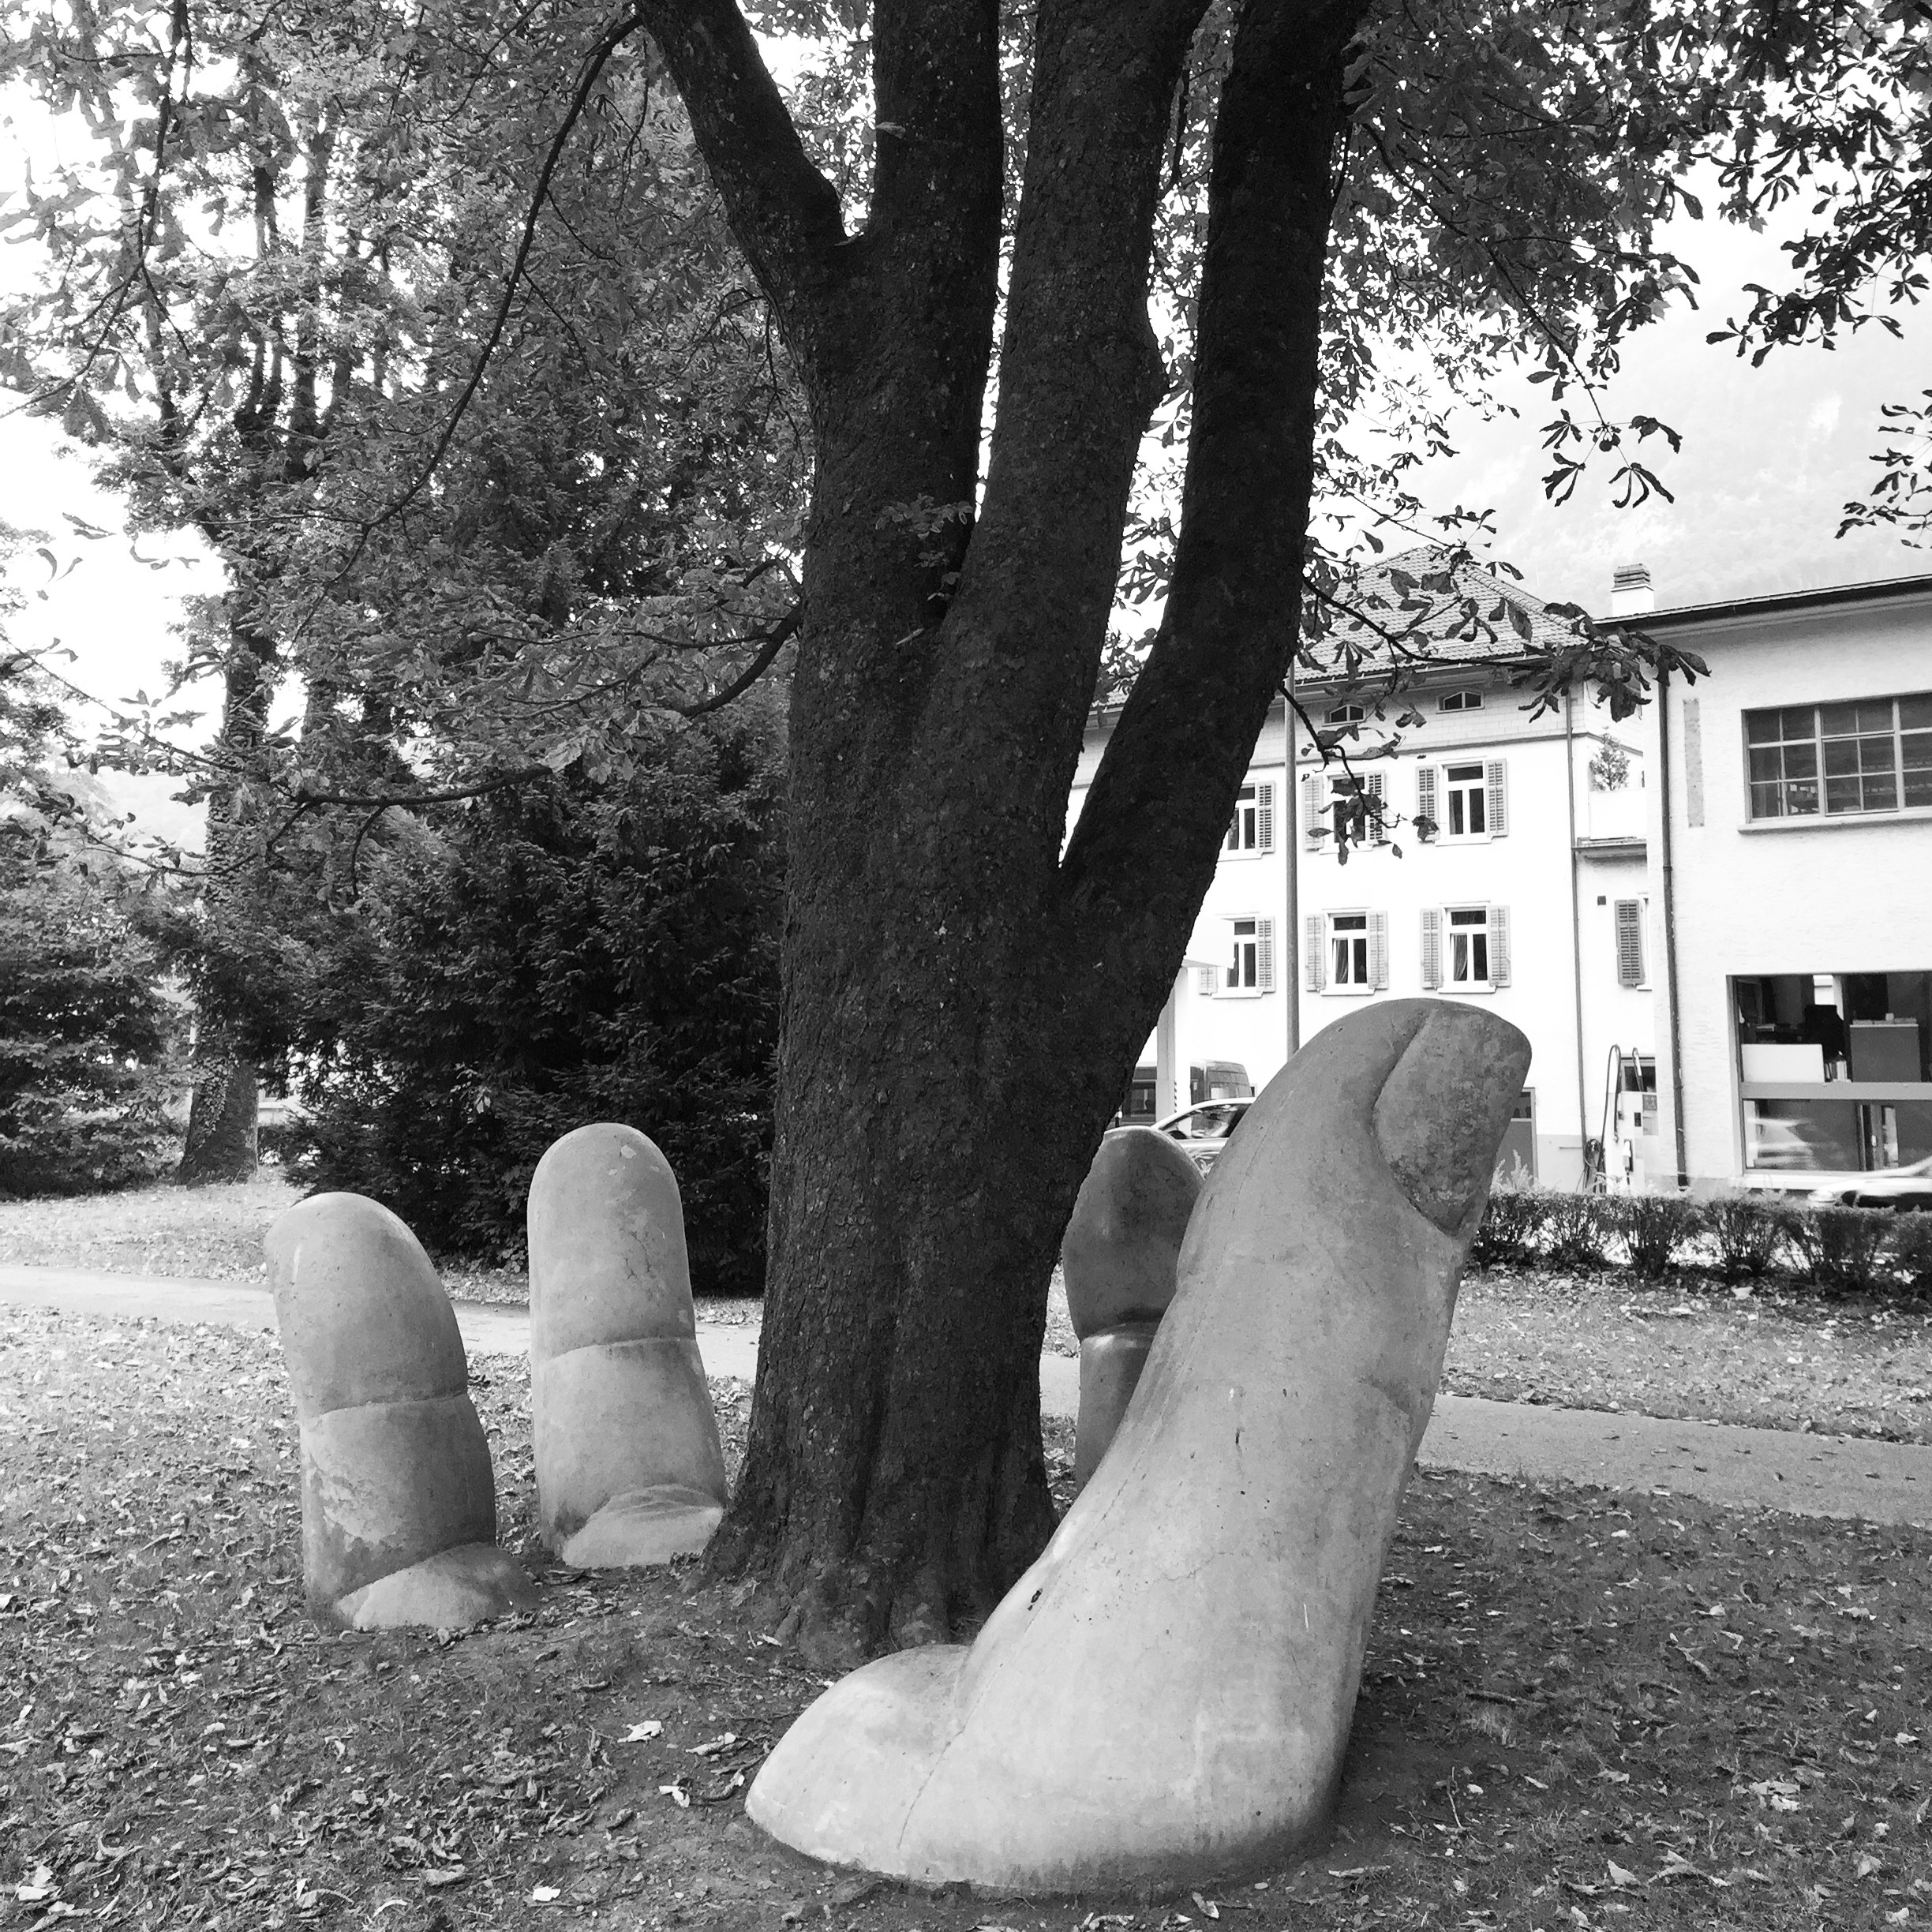  'Der Baum in der Hand', street art in Glarus.&nbsp; 